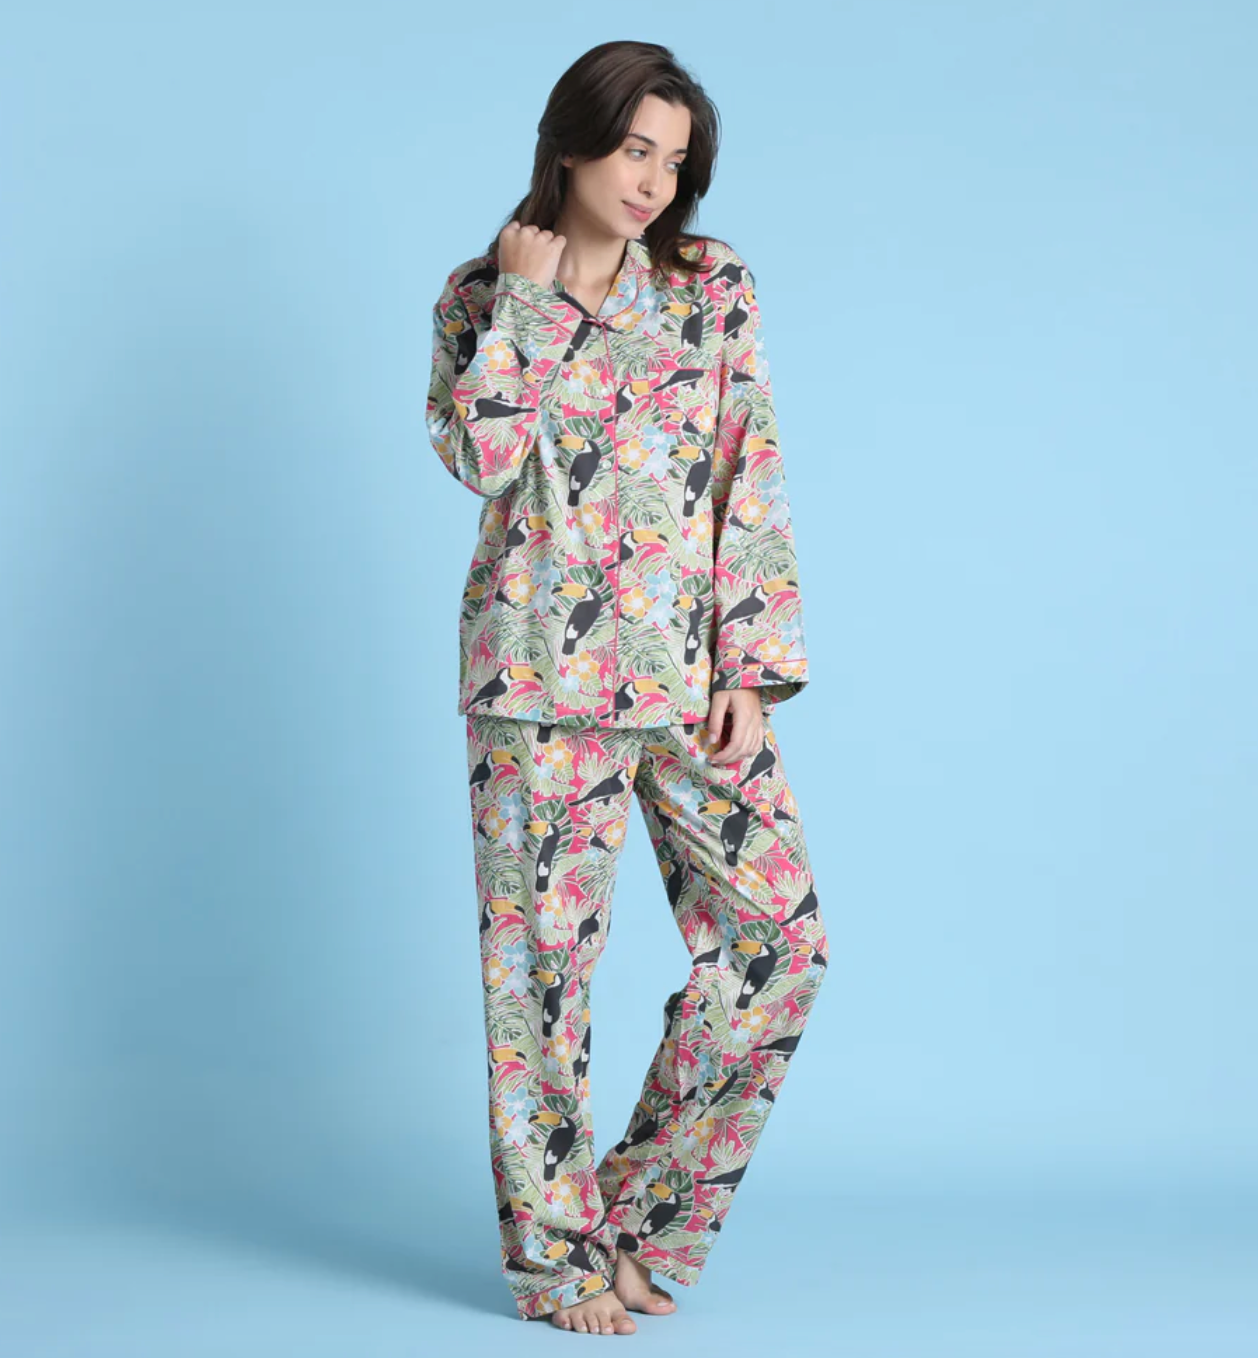 Toucan cotton pajamas by Mahogany